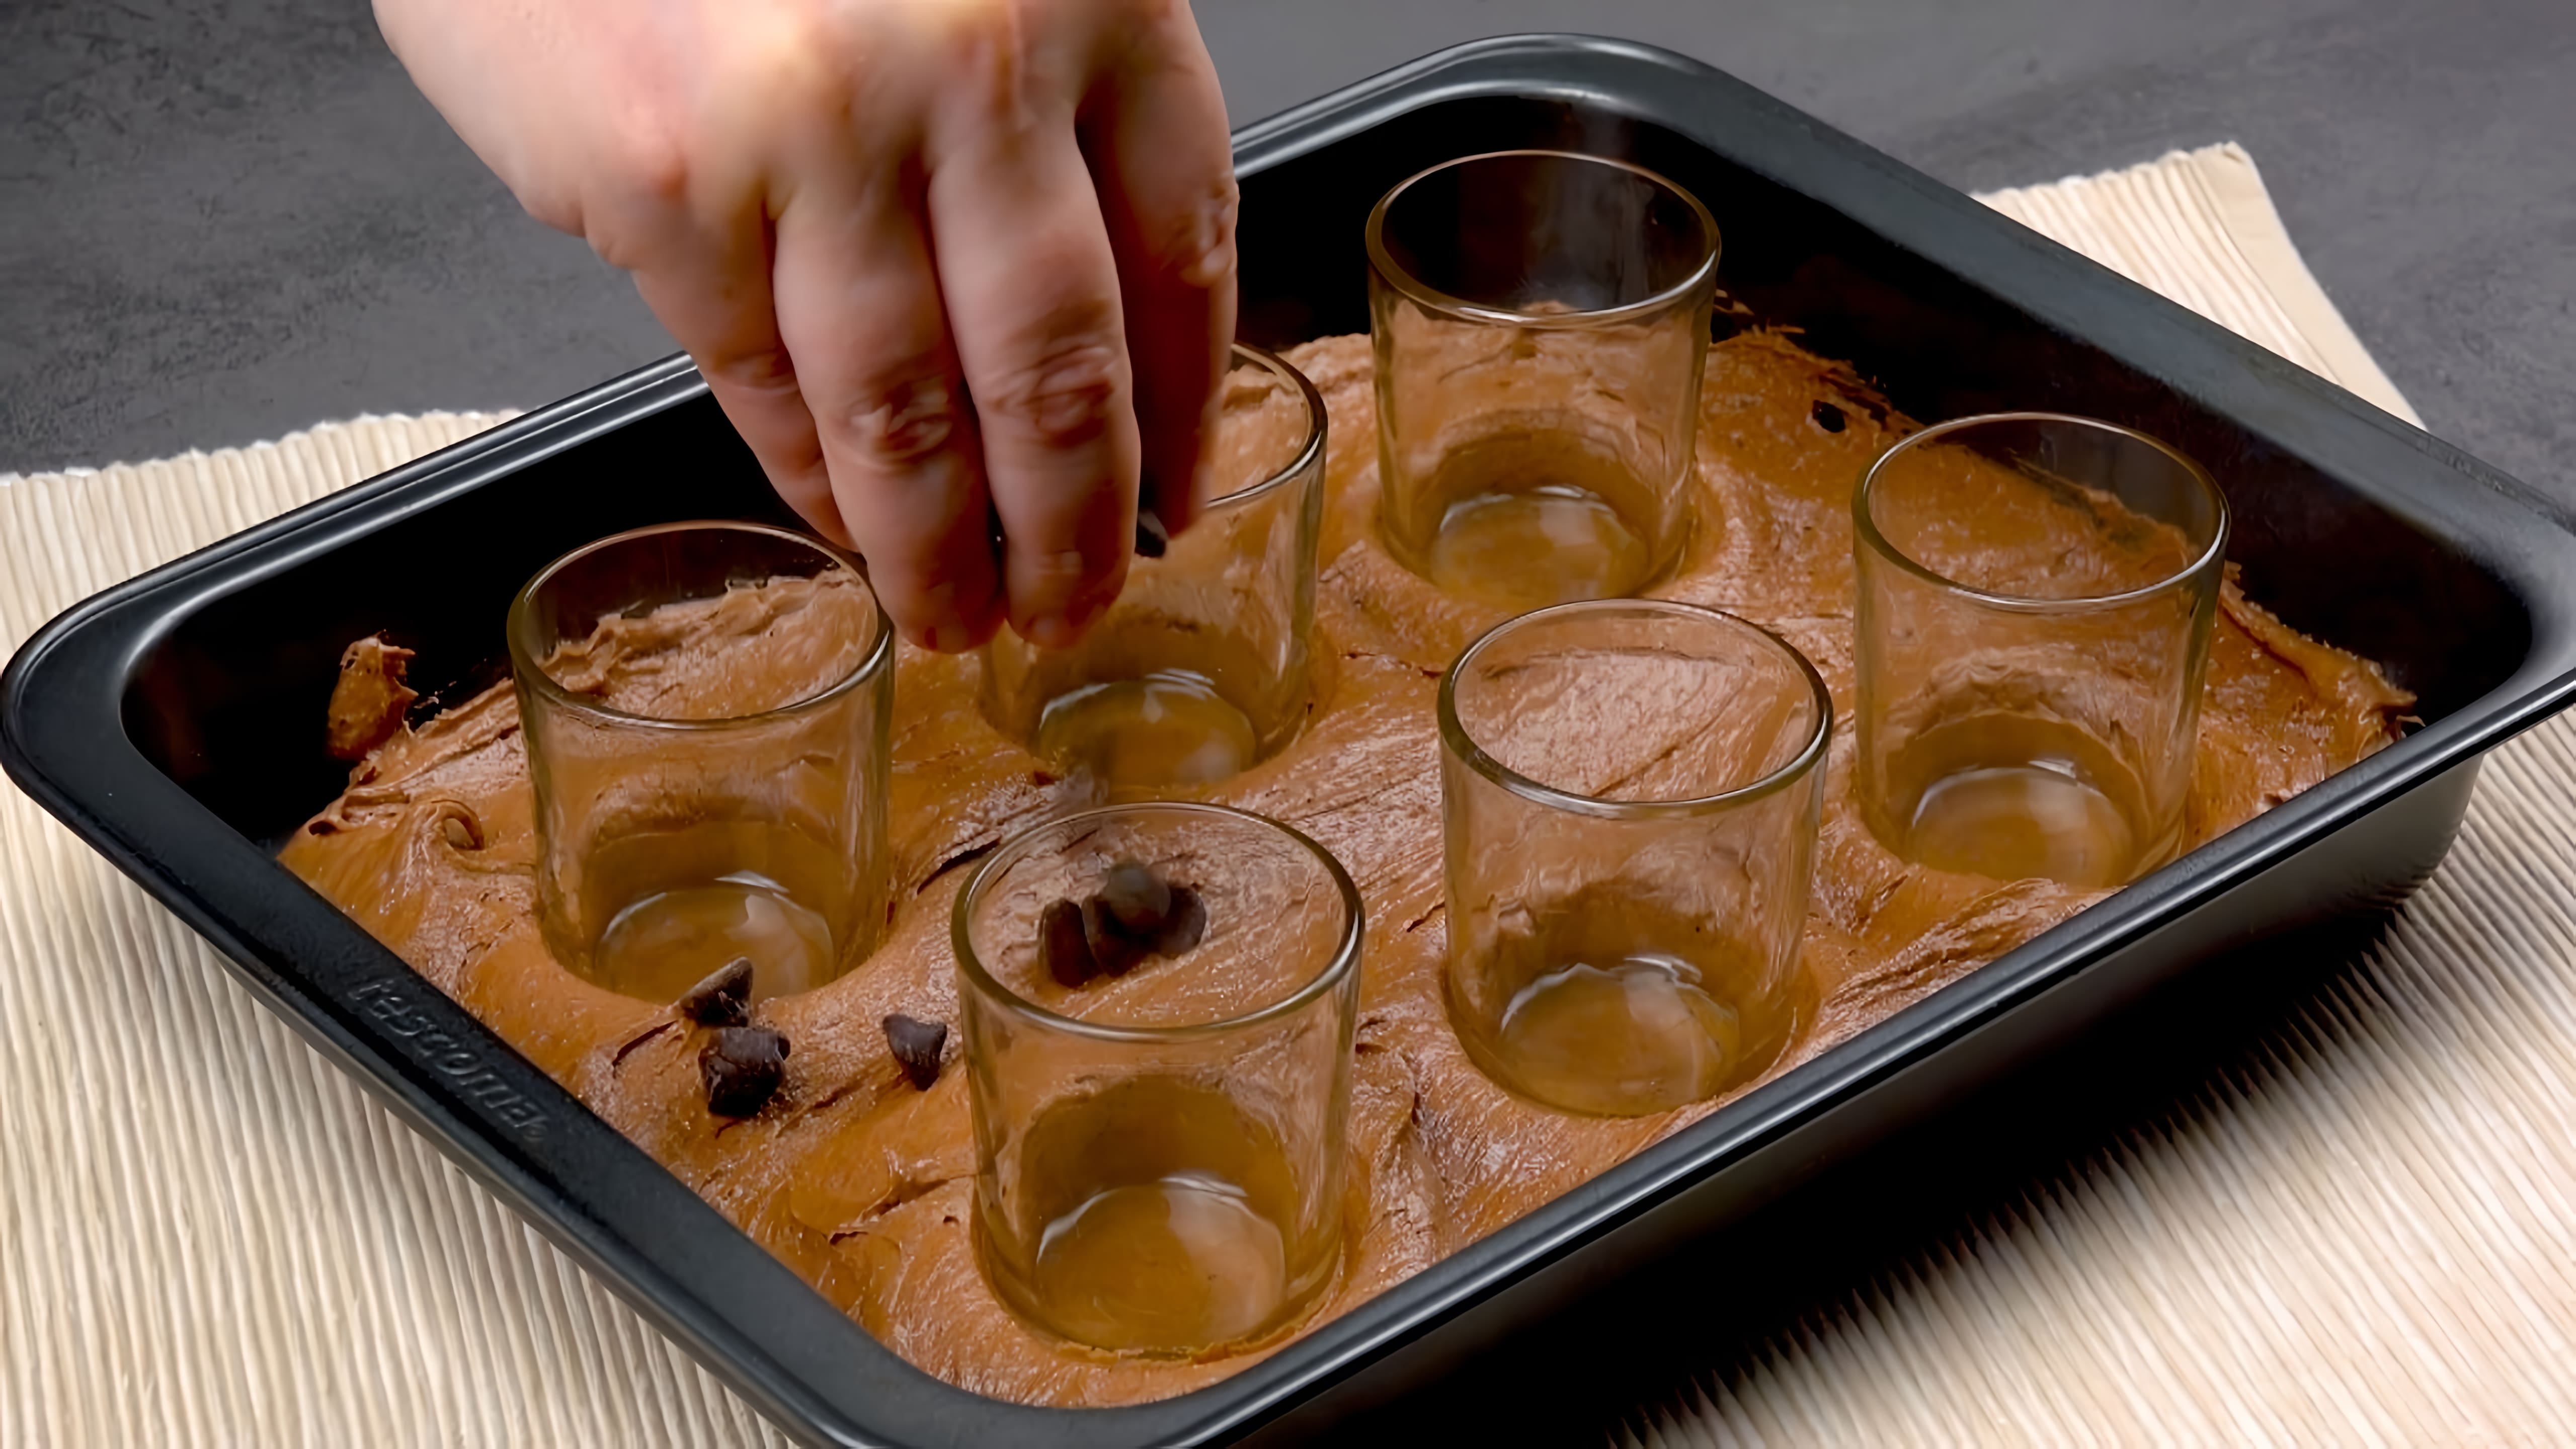 Видео: Вставляем 6 стаканов в мягкое тесто и получаем классный праздничный десерт.